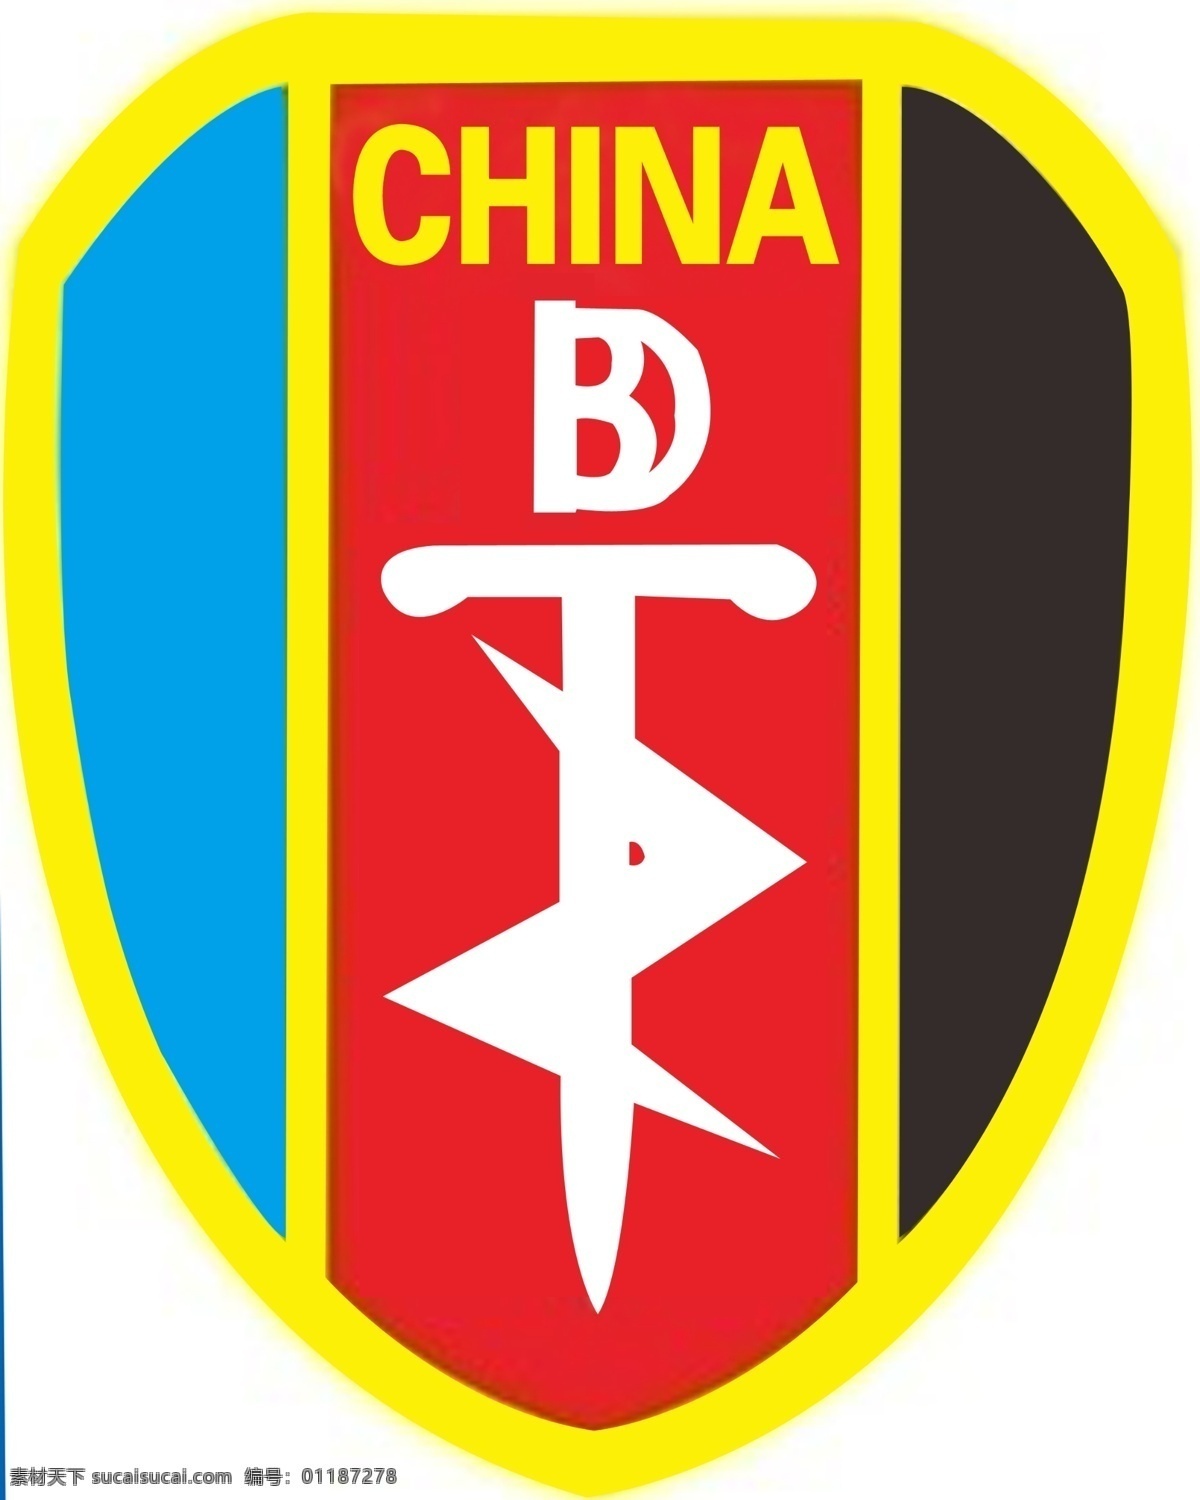 中国 特种部队 标志设计 广告设计模板 源文件 中国特种部队 部队标志 展板 部队党建展板